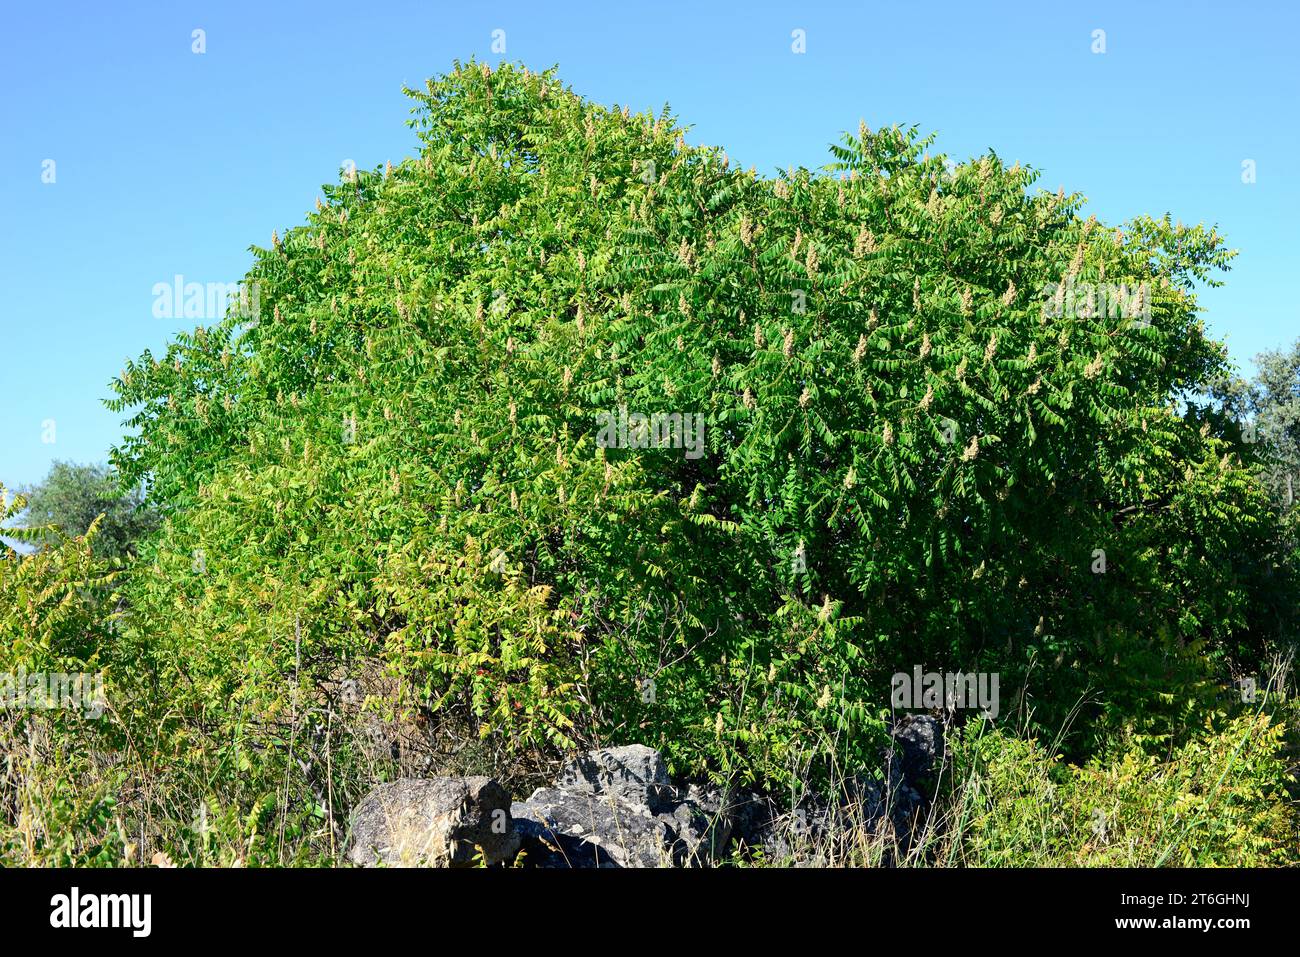 Il Sumac o sumac del conciatore (Rhus coriaria) è un arbusto deciduo originario dell'Europa meridionale e dell'Asia occidentale. Ceramiche per corteccia e foglie utilizzate per la concia in cuoio. Foto Stock